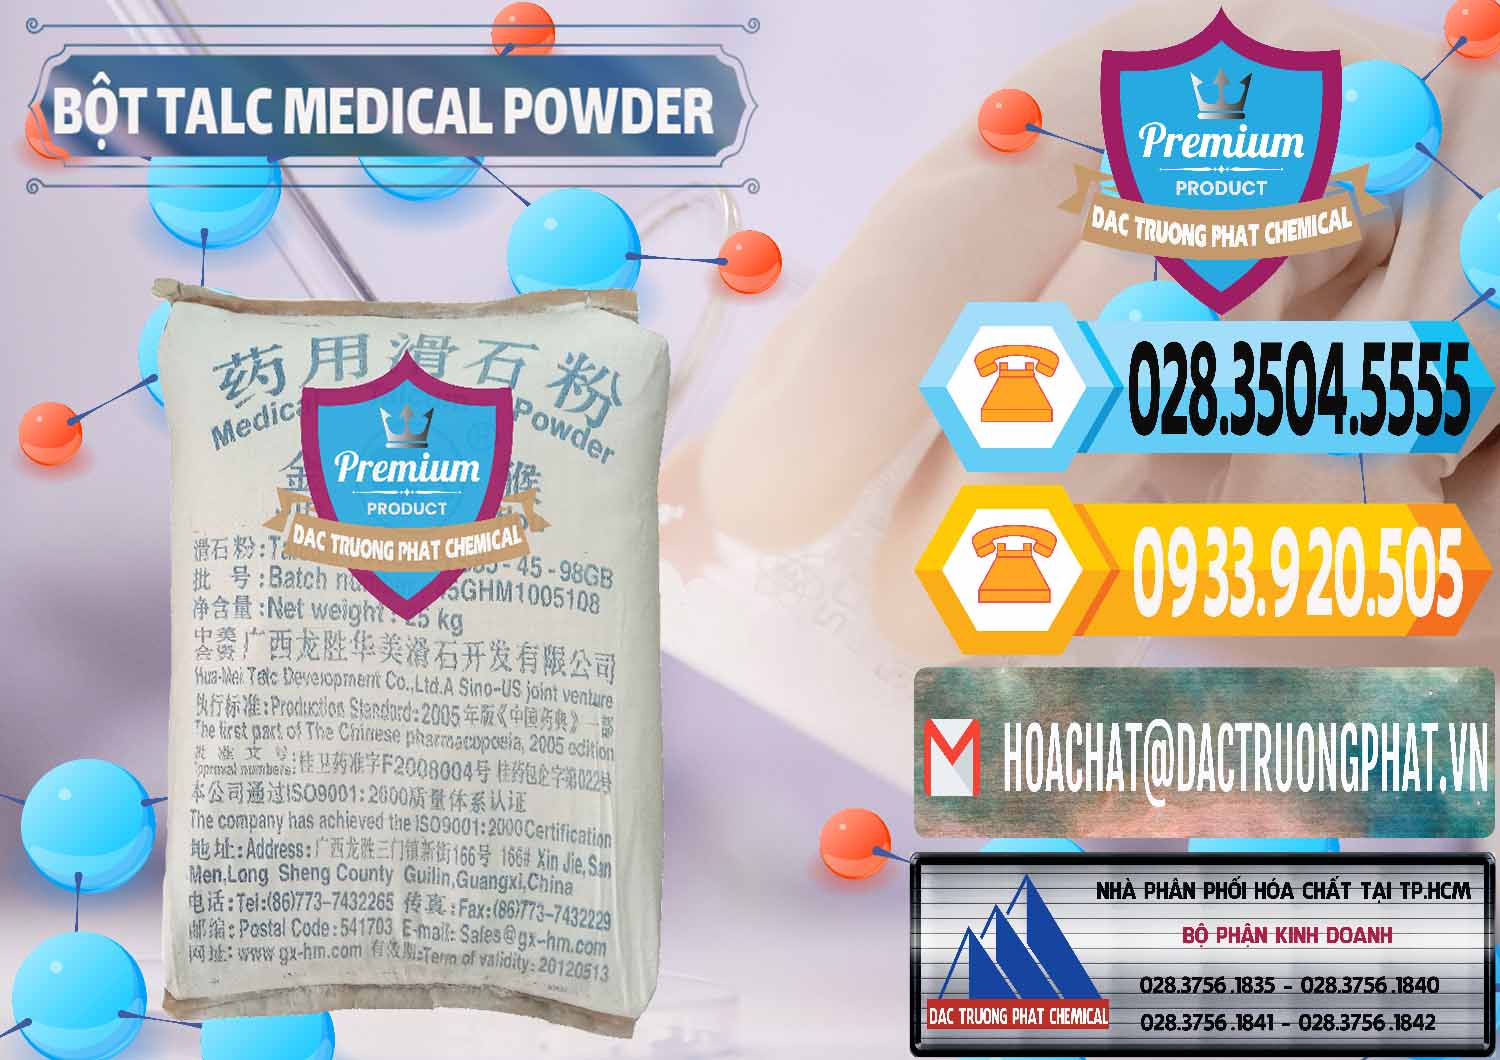 Đơn vị kinh doanh & bán Bột Talc Medical Powder Trung Quốc China - 0036 - Nơi nhập khẩu - phân phối hóa chất tại TP.HCM - hoachattayrua.net